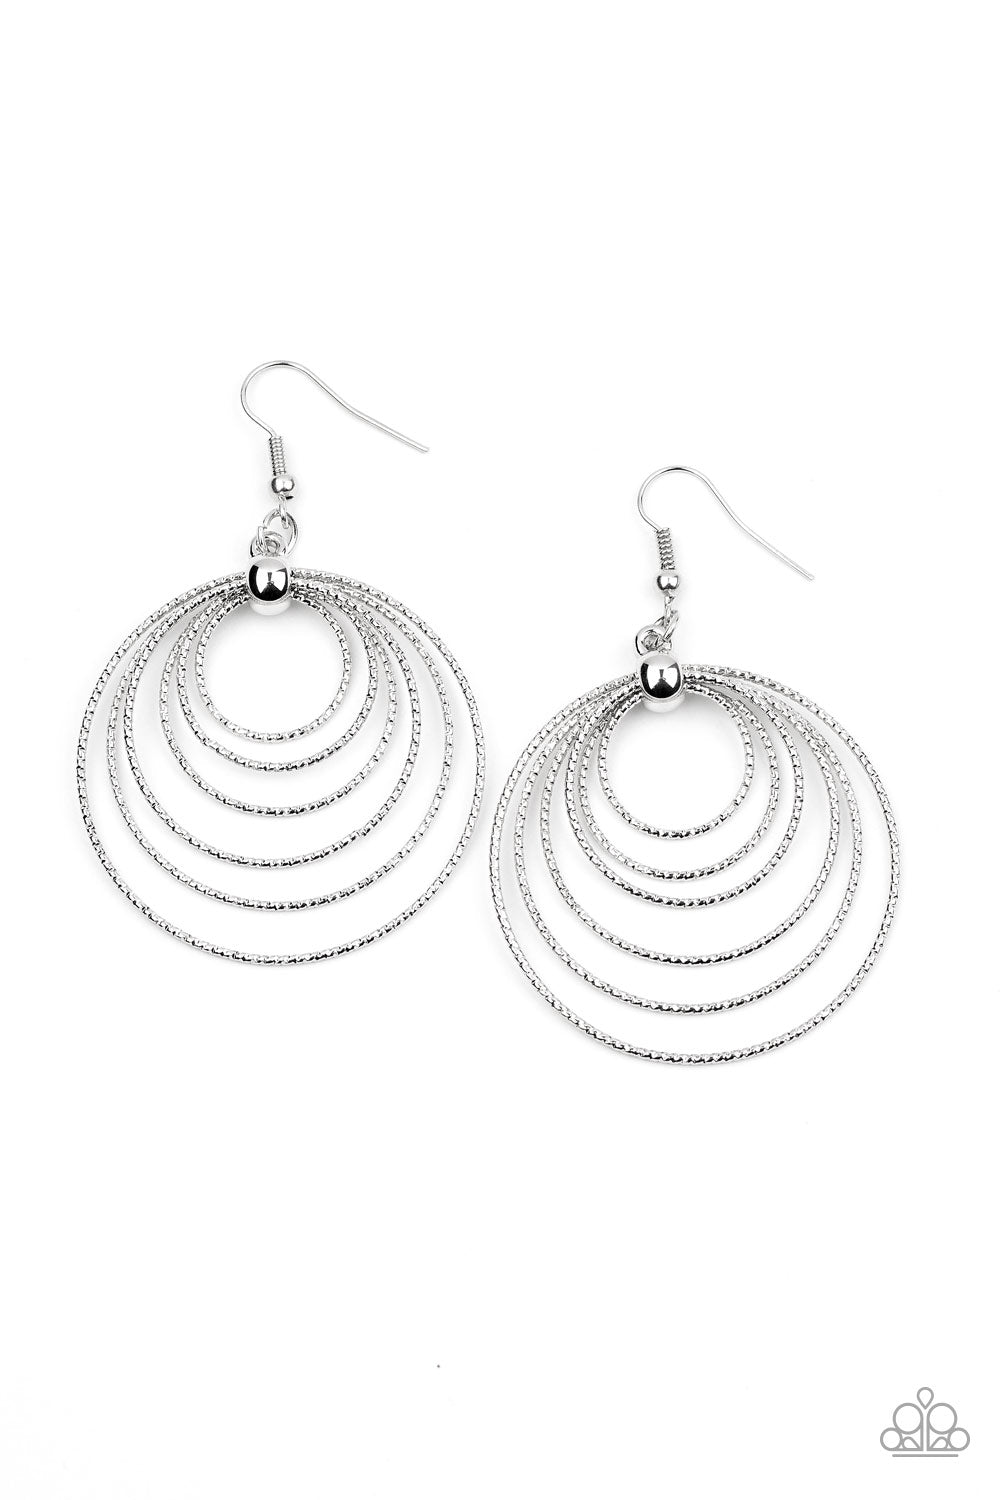 Elliptical Elegance Silver
Earrings - Daria's Blings N Things